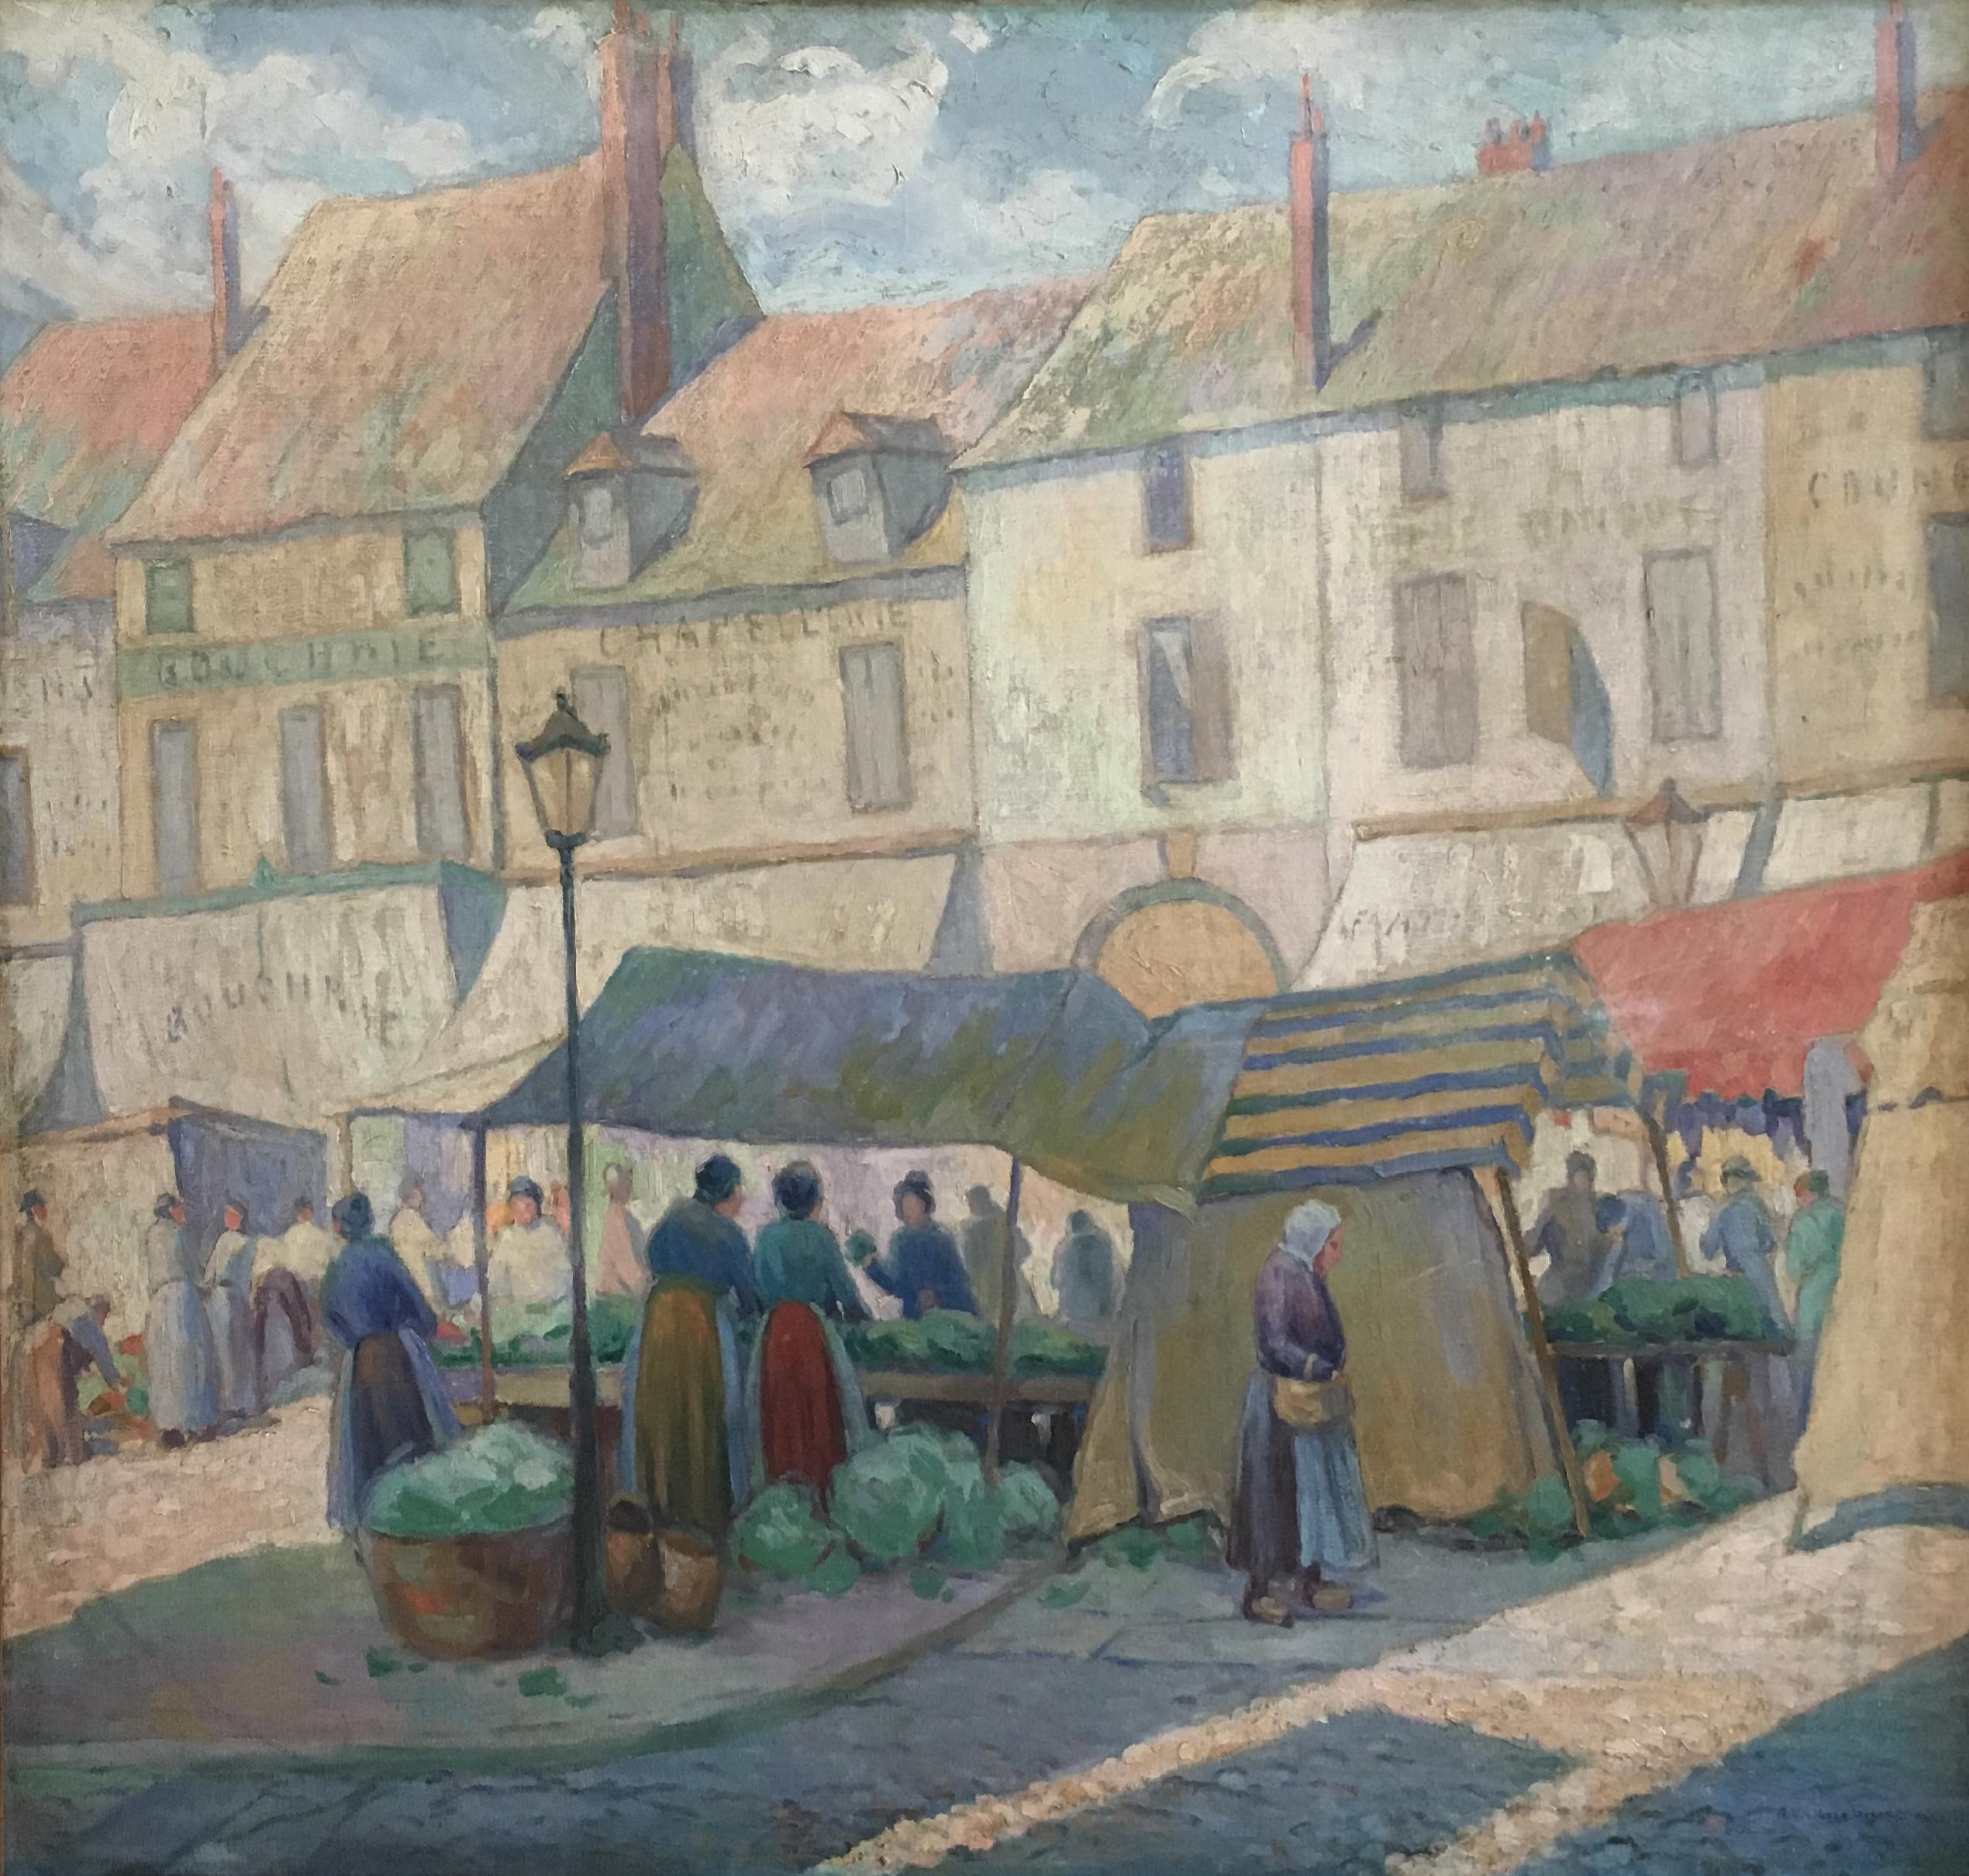 Marché à Paris, scène de ville européenne avec personnages, impressionniste américain, 1922 - Painting de Albert Van Nesse Greene